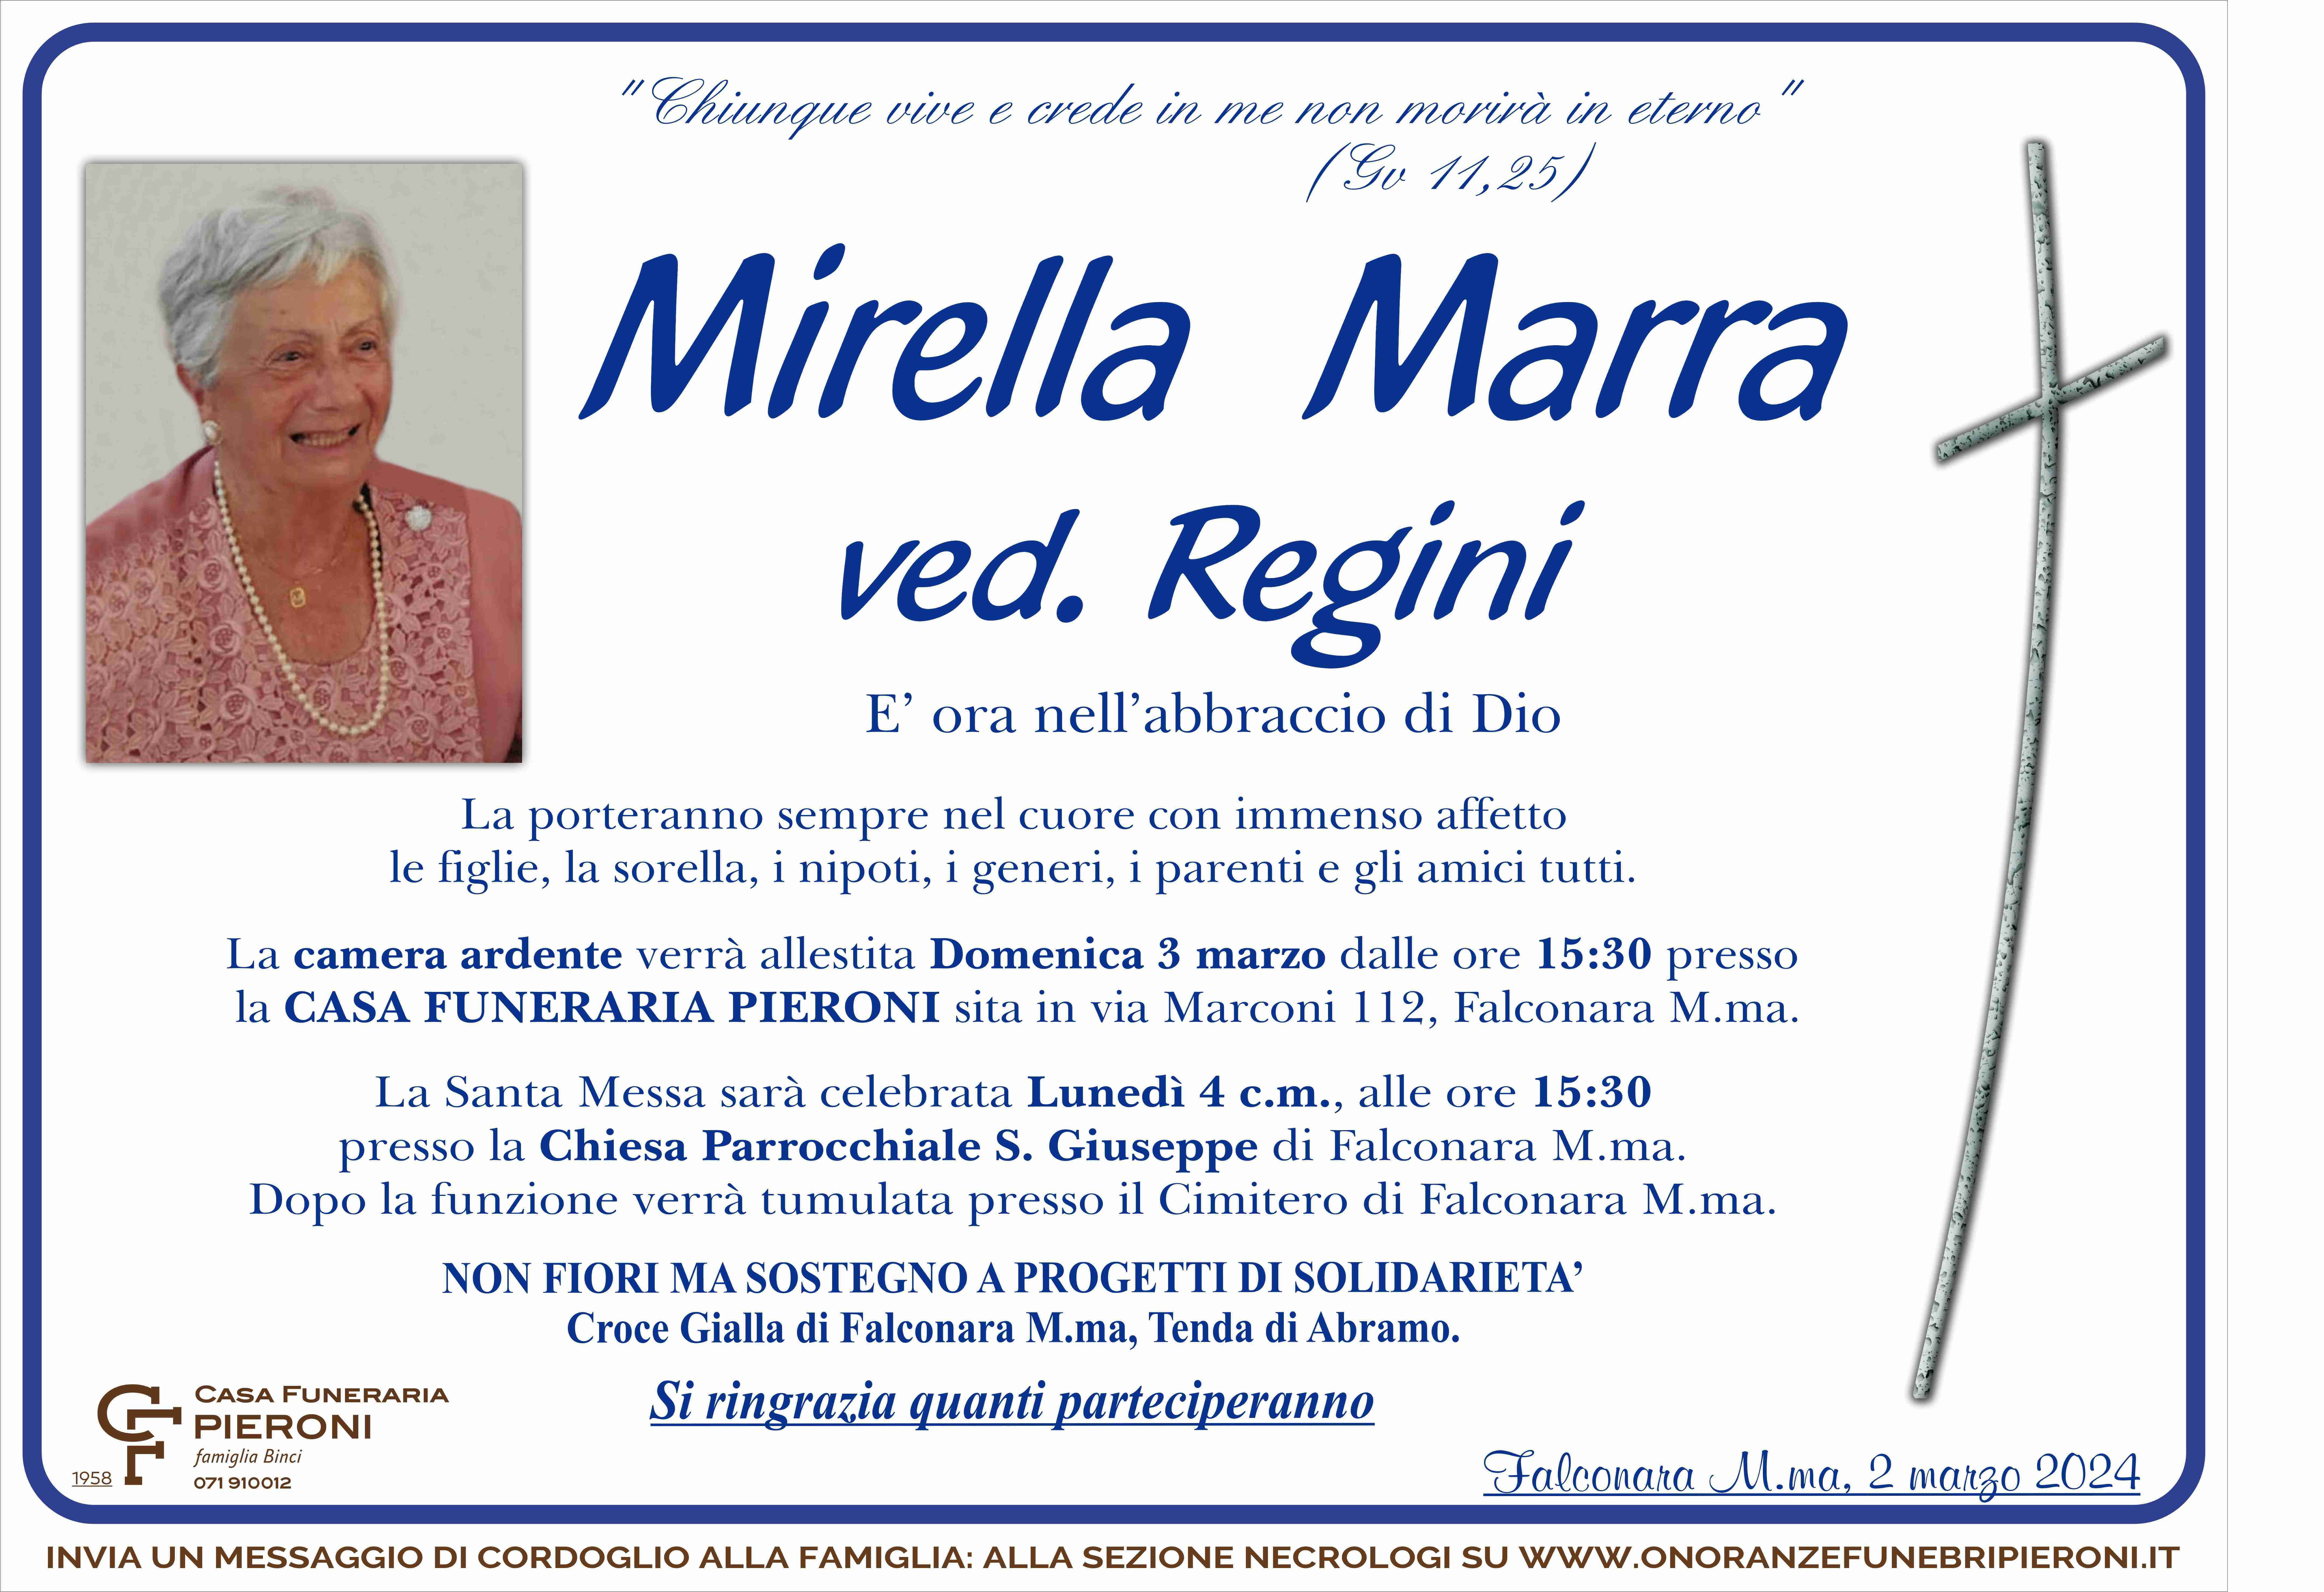 Mirella Marra